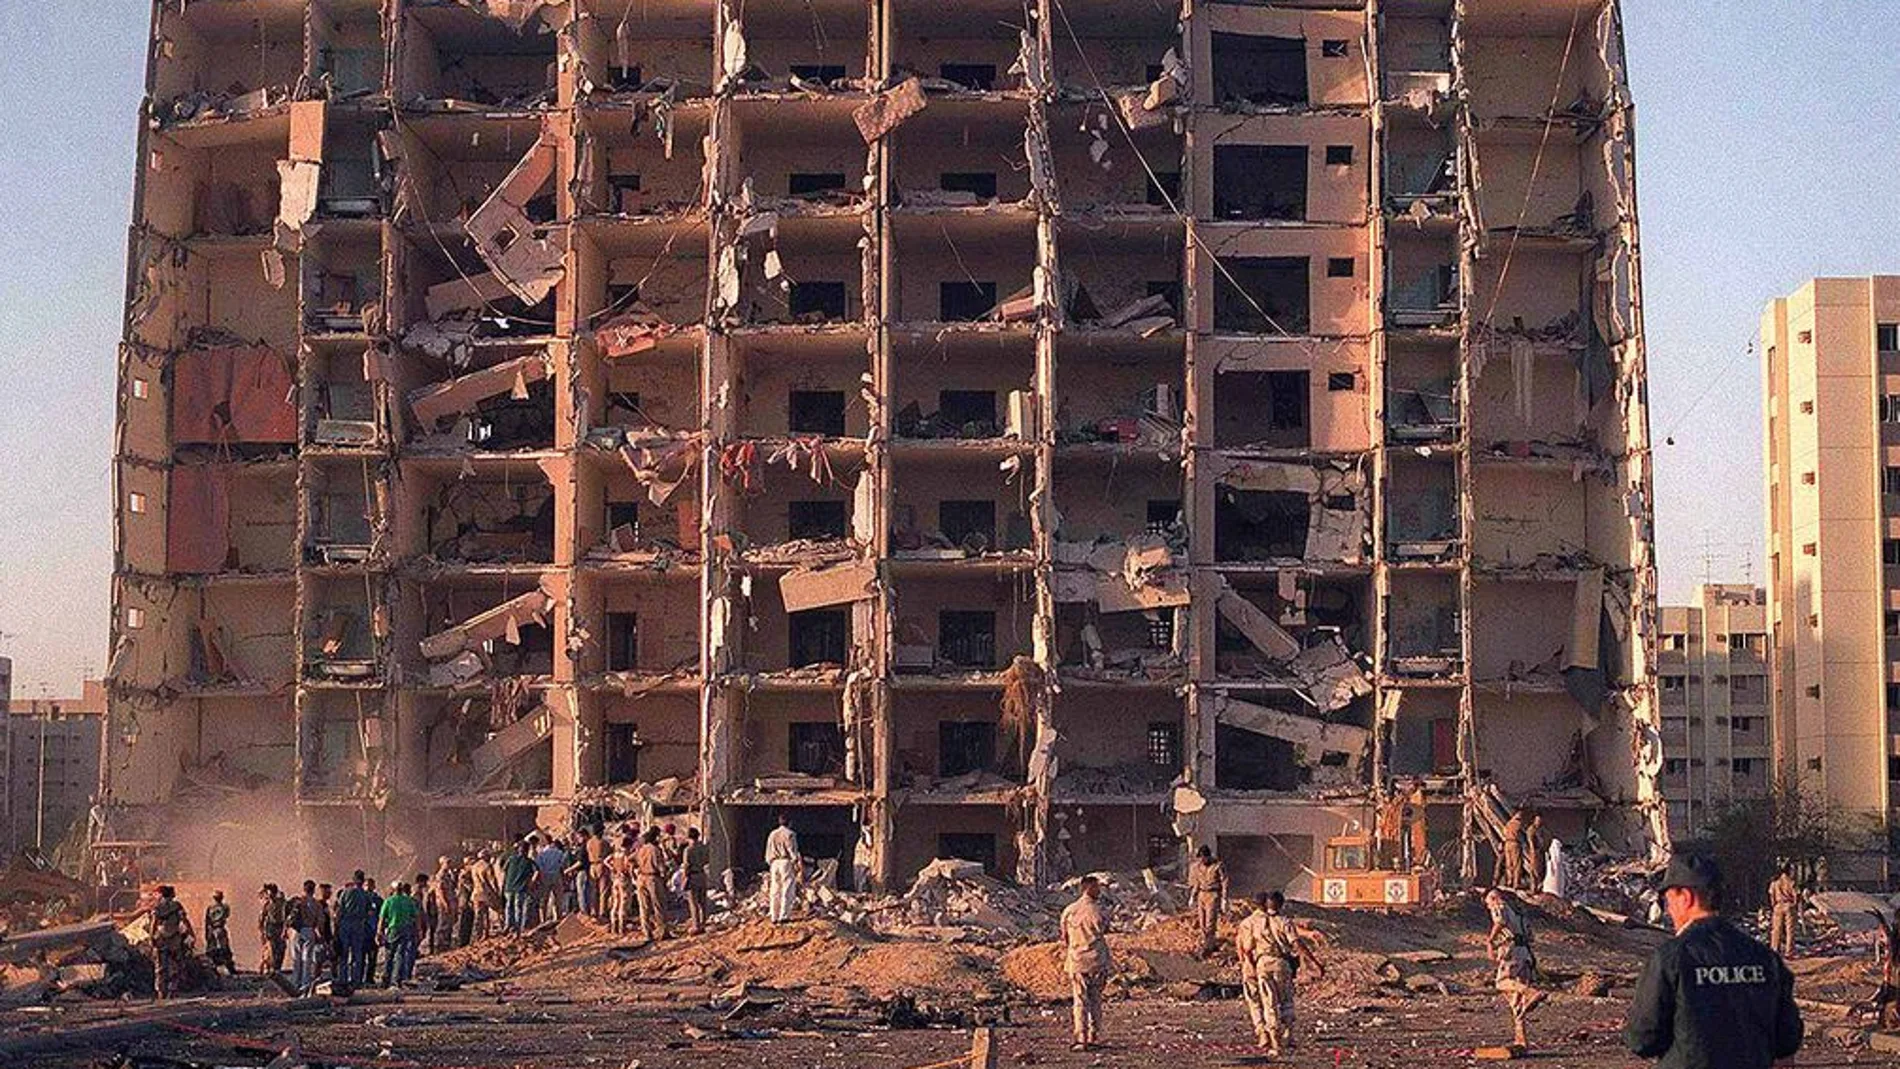 El edificio quedó completamente destruido y 19 soldados norteamericanos murieron